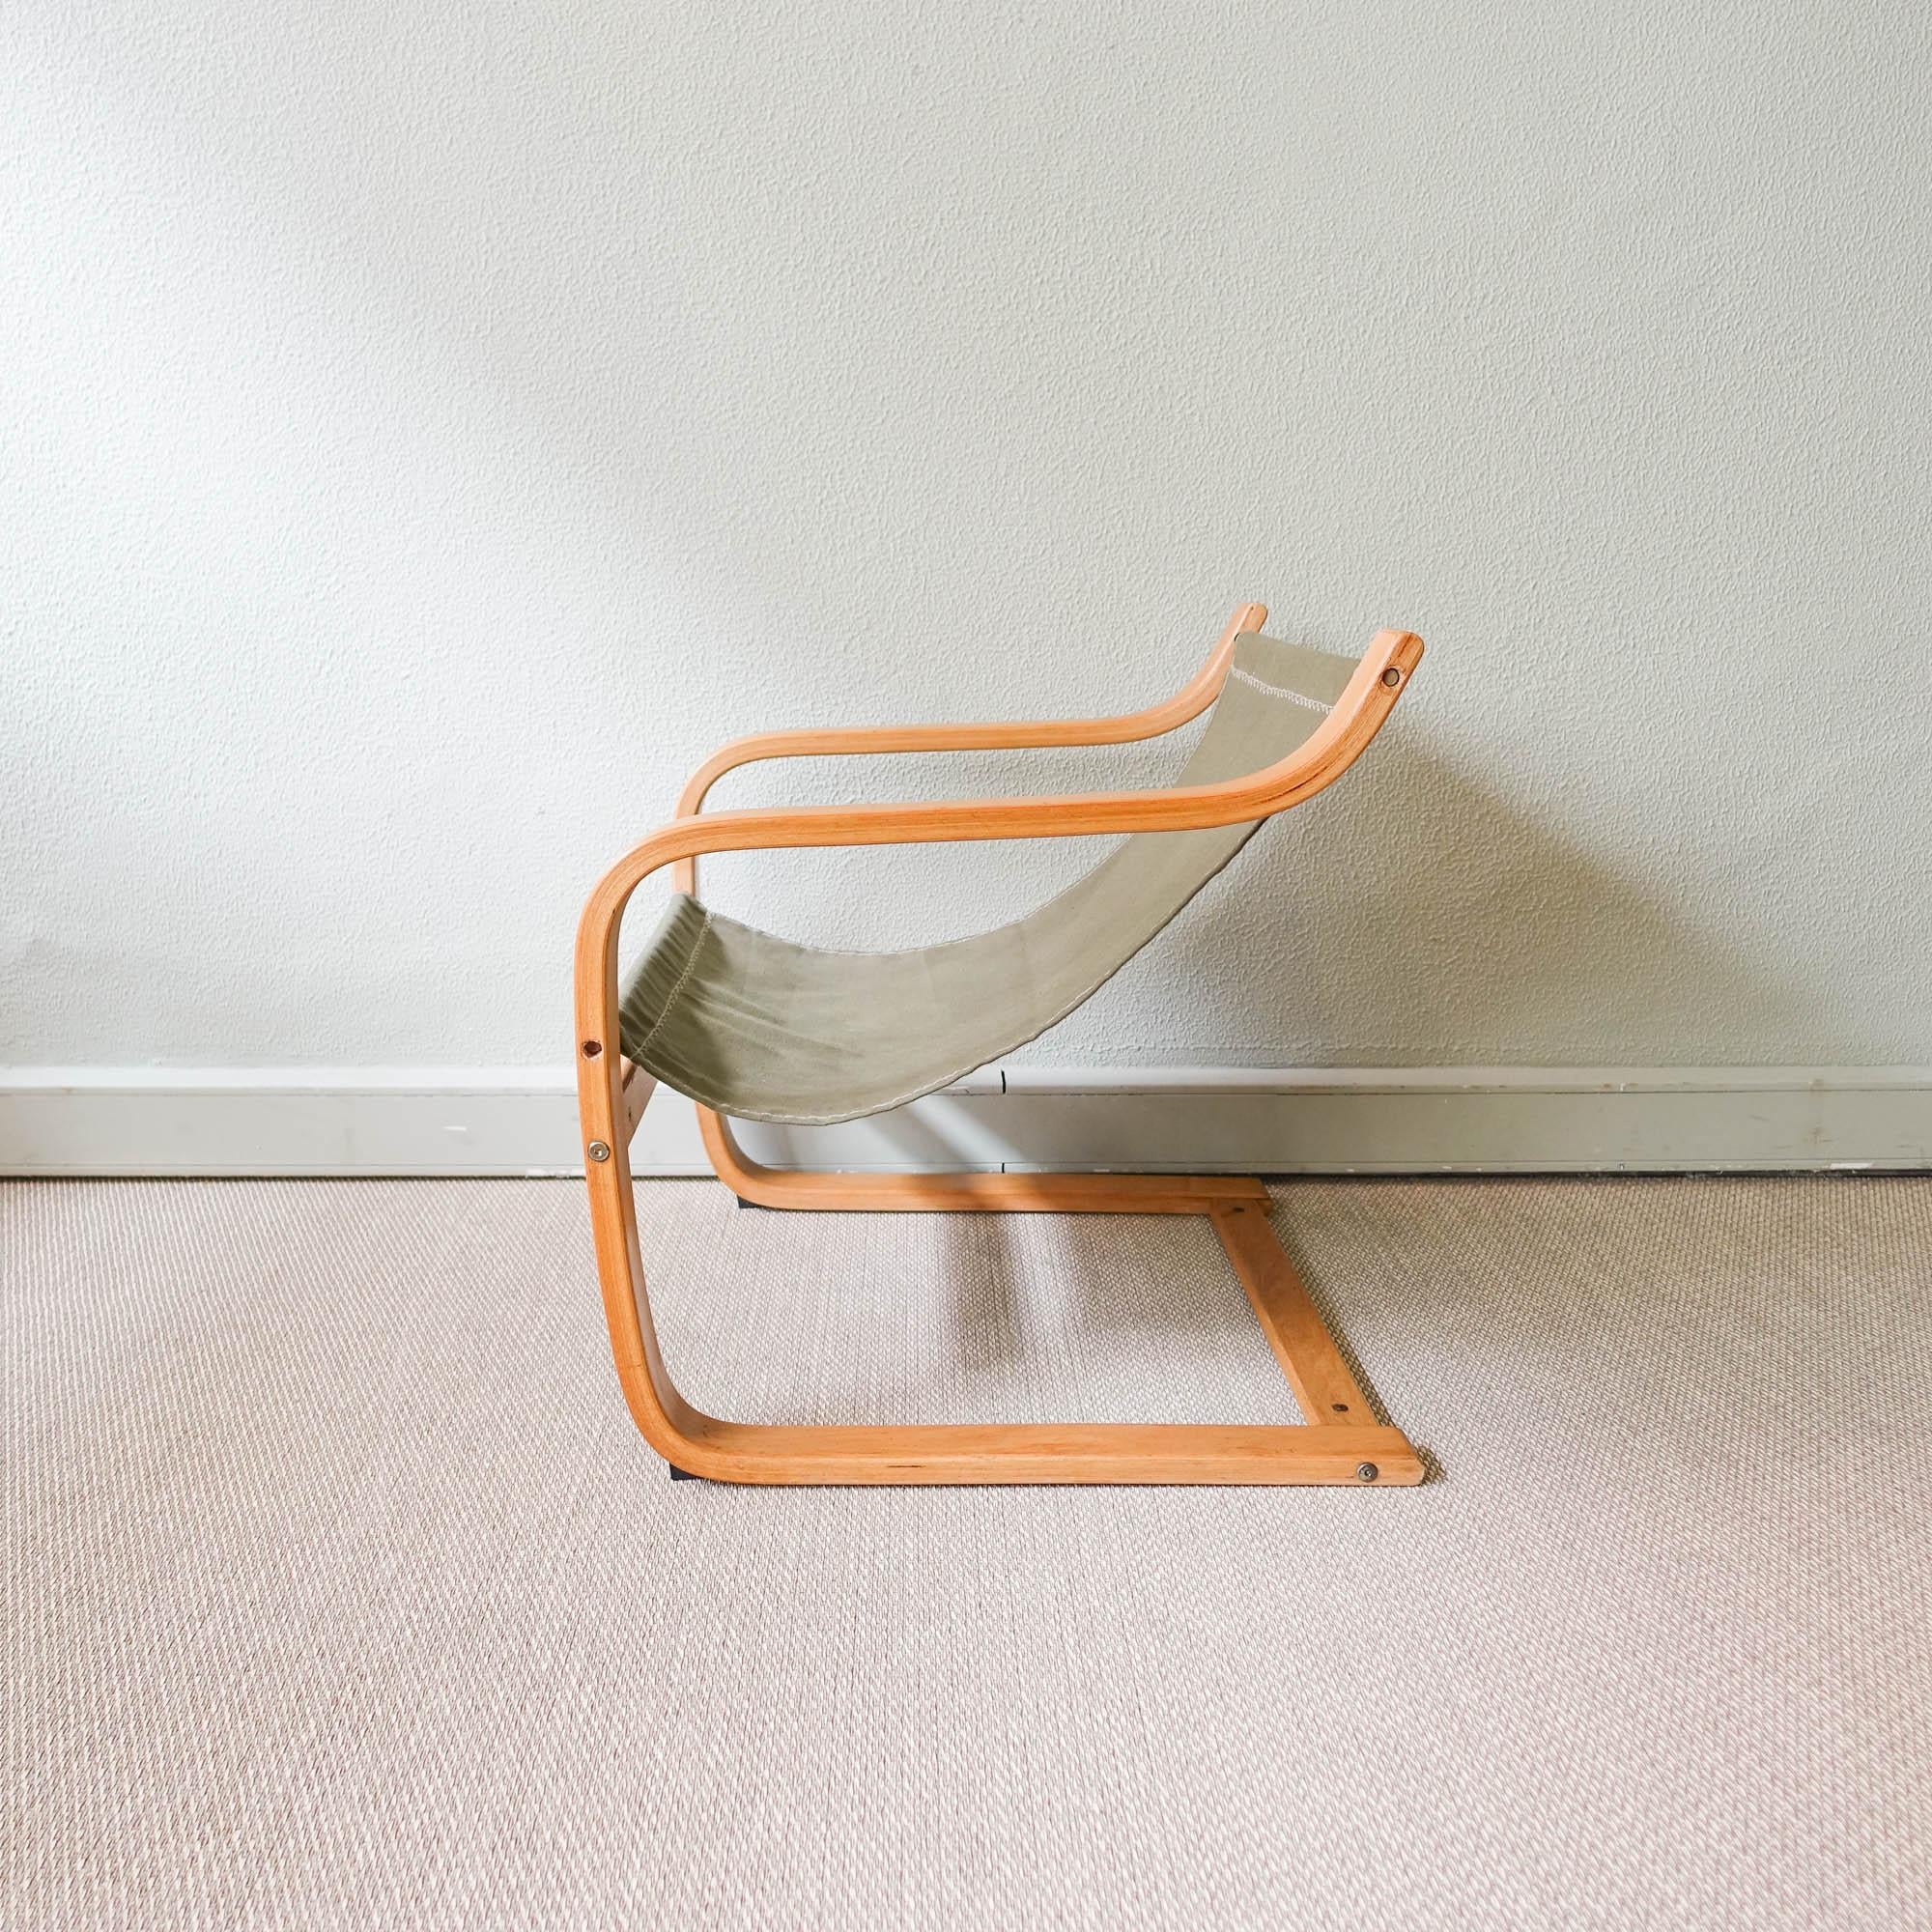 Cette chaise longue a été conçue et produite par IKEA, en Suède, dans les années 1970. Il est fabriqué en bois de hêtre courbé et le siège est en toile de coton verte. Il s'agit d'une pièce confortable, dont le design s'inspire de celui d'Alvar